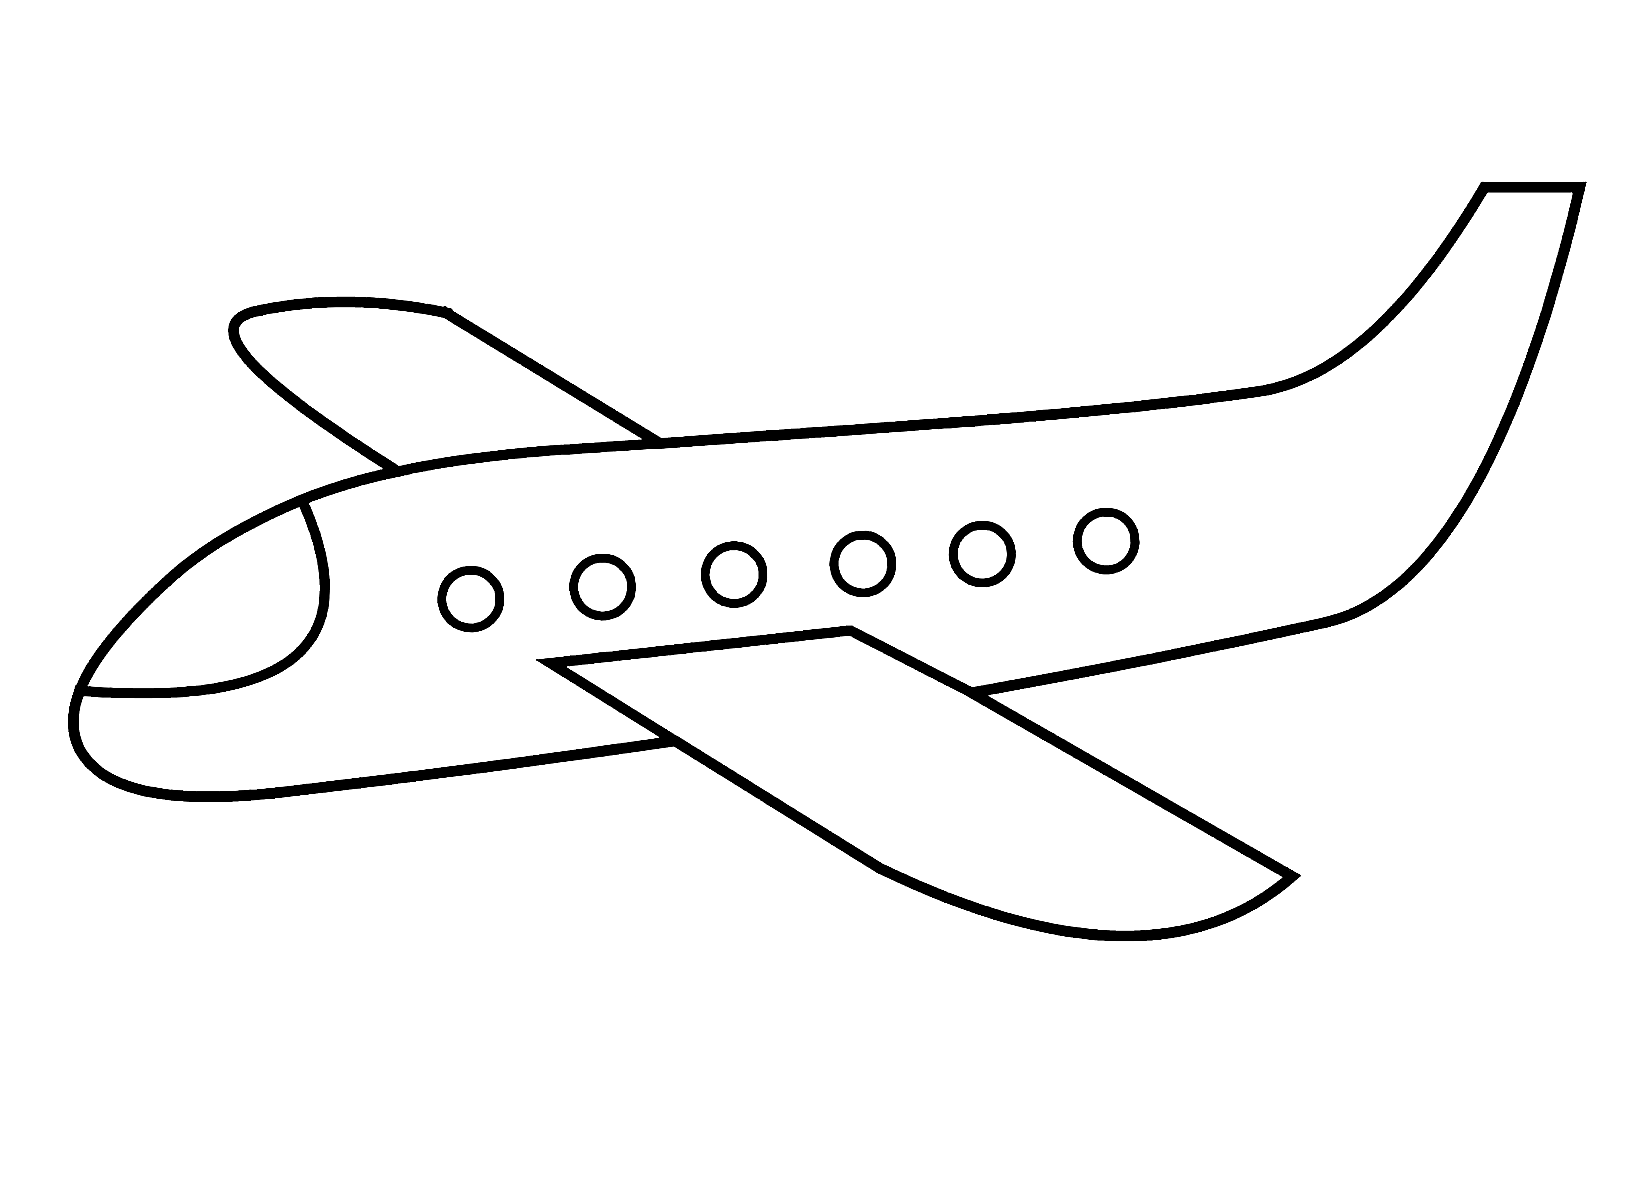 Avion simple à partir d'un avion